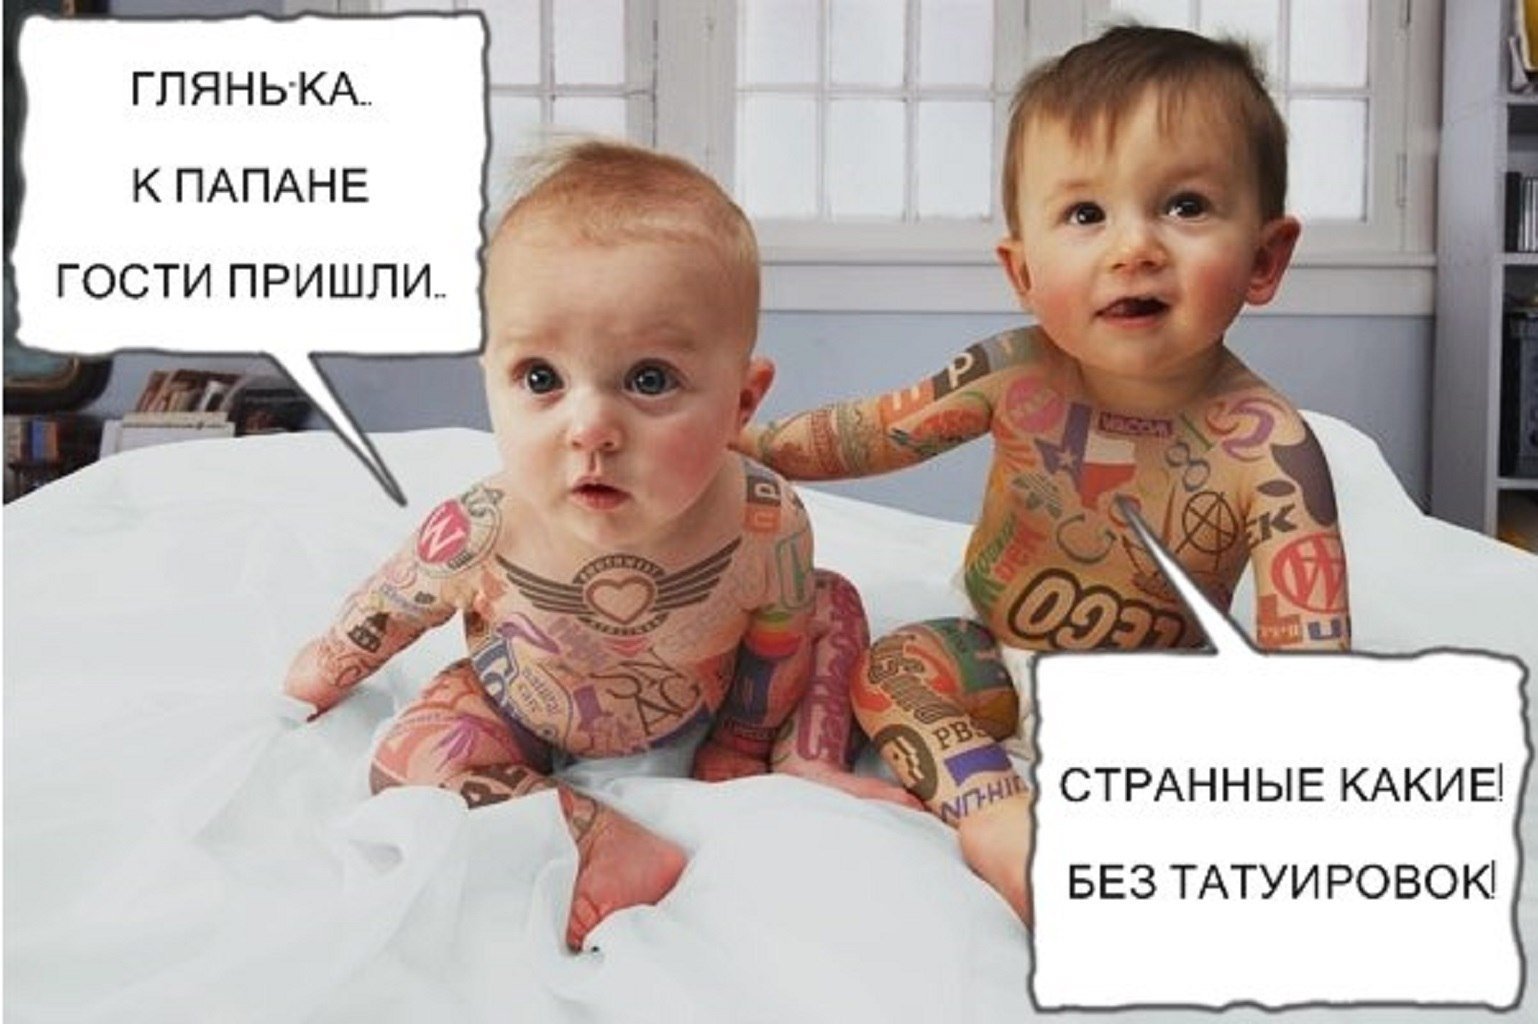 Как тату-мастеру настроить поздравление с днем рождения в группе в ВКонтакте? - SMM